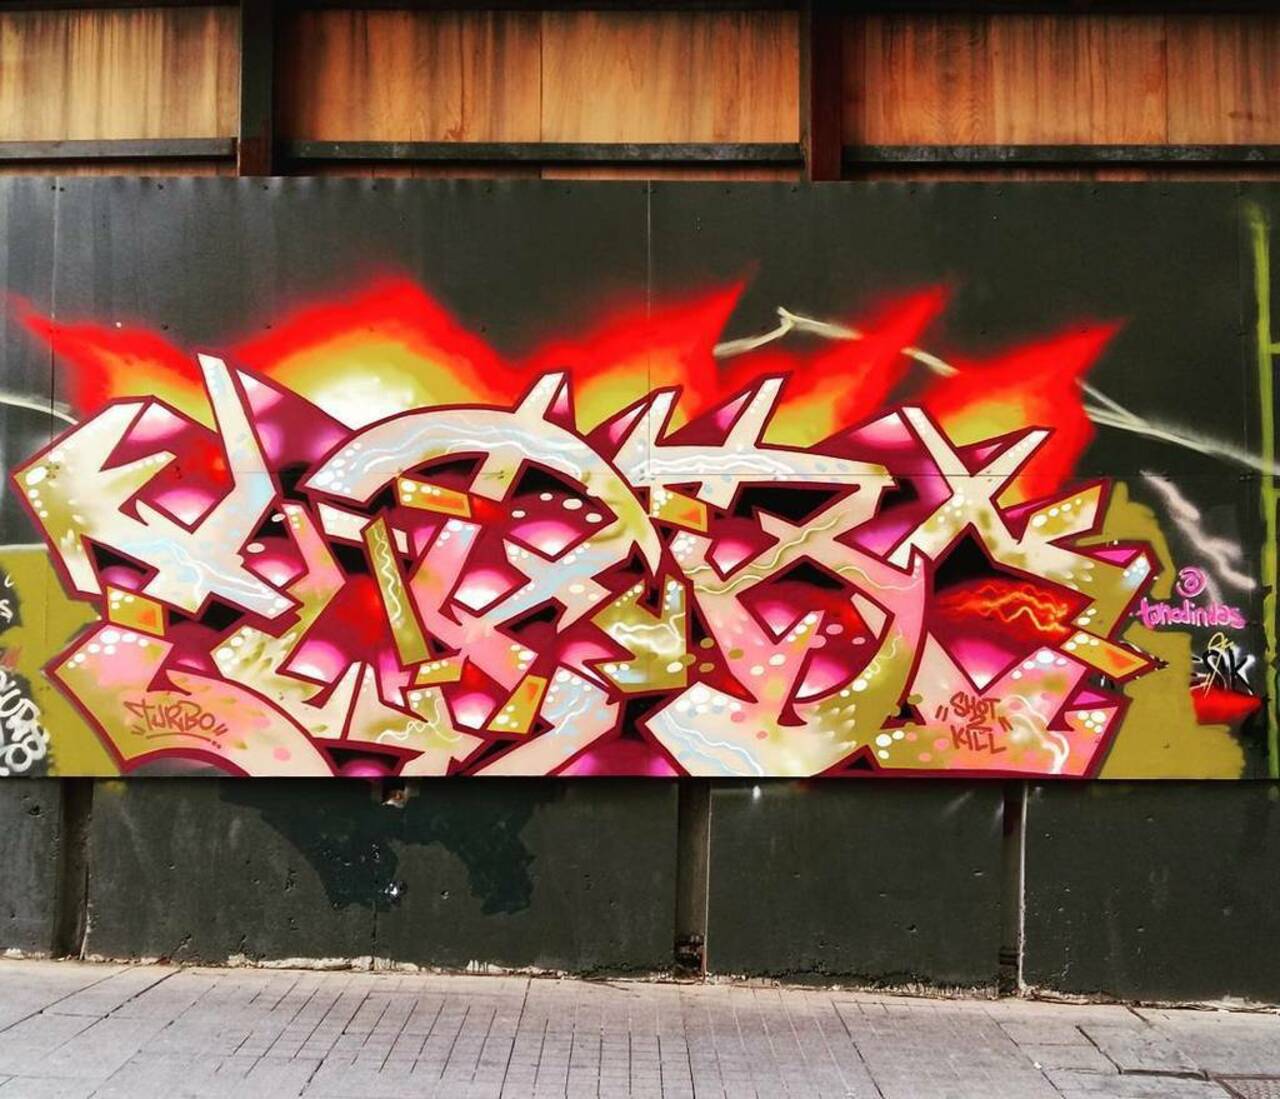 Work by @tuncdindas @dsb_graff #dsb_graff @rsa_graffiti @streetawesome #streetart #urbanart #graffitiart #graffiti … http://t.co/GS7RKLLaj0